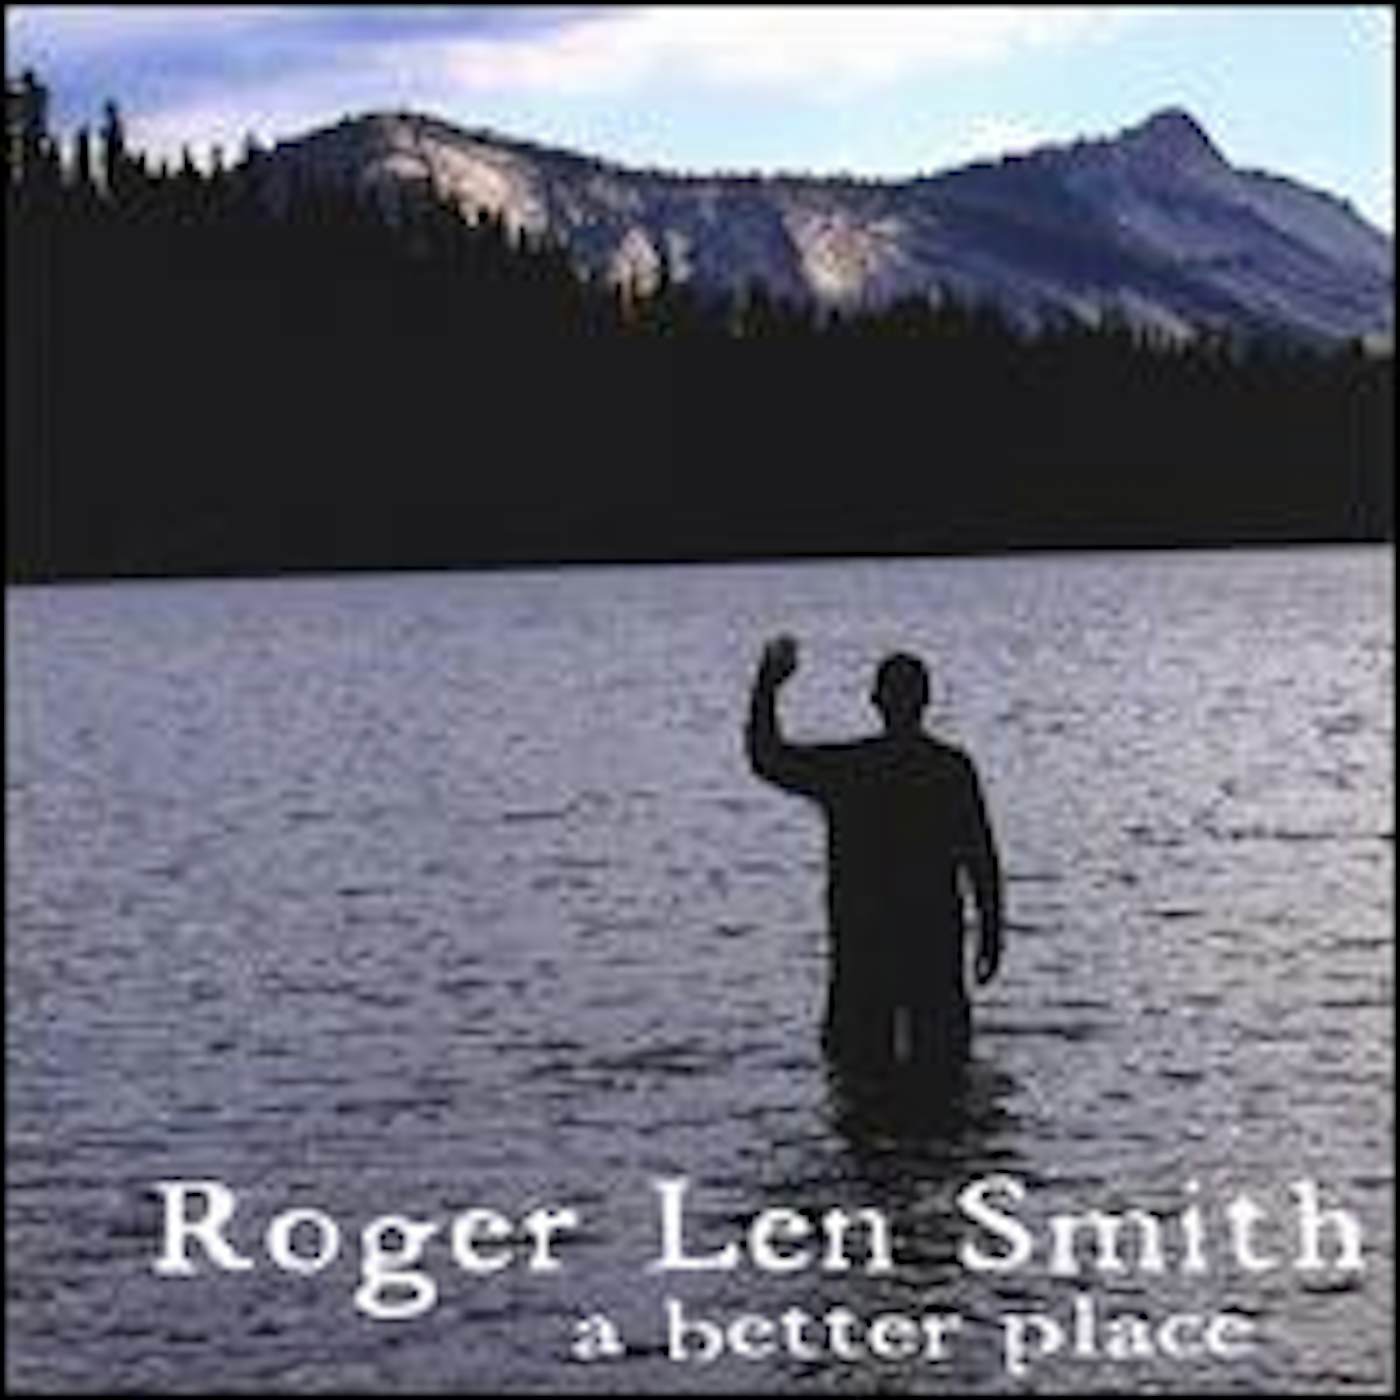 Roger Len Smith BETTER PLACE CD